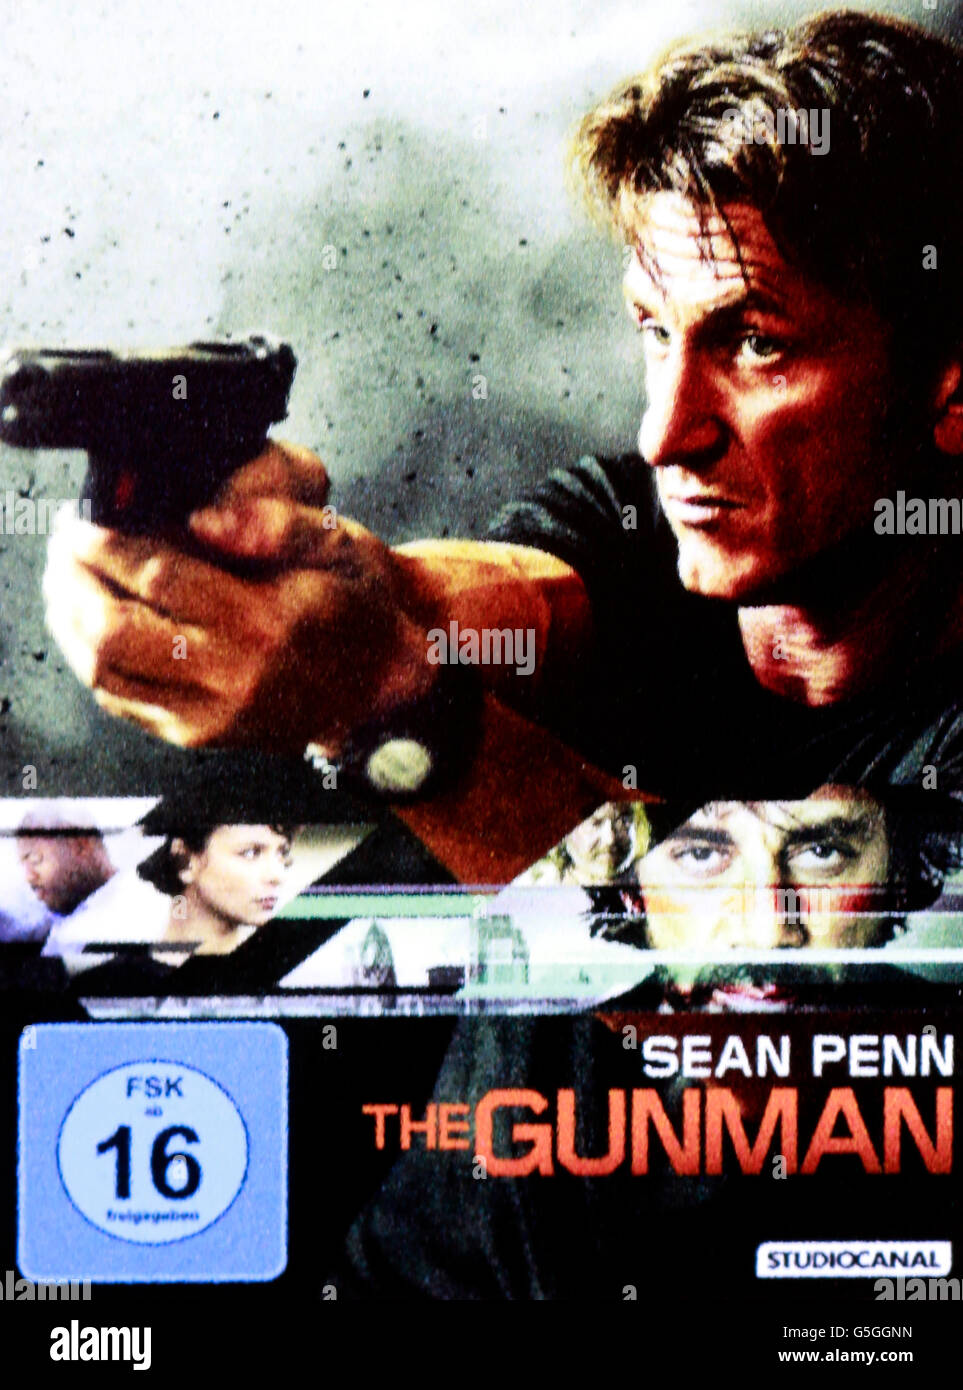 Filmplakat zum Spielfilm 'The Gunman' mit Sean Penn, Berlin. Stock Photo